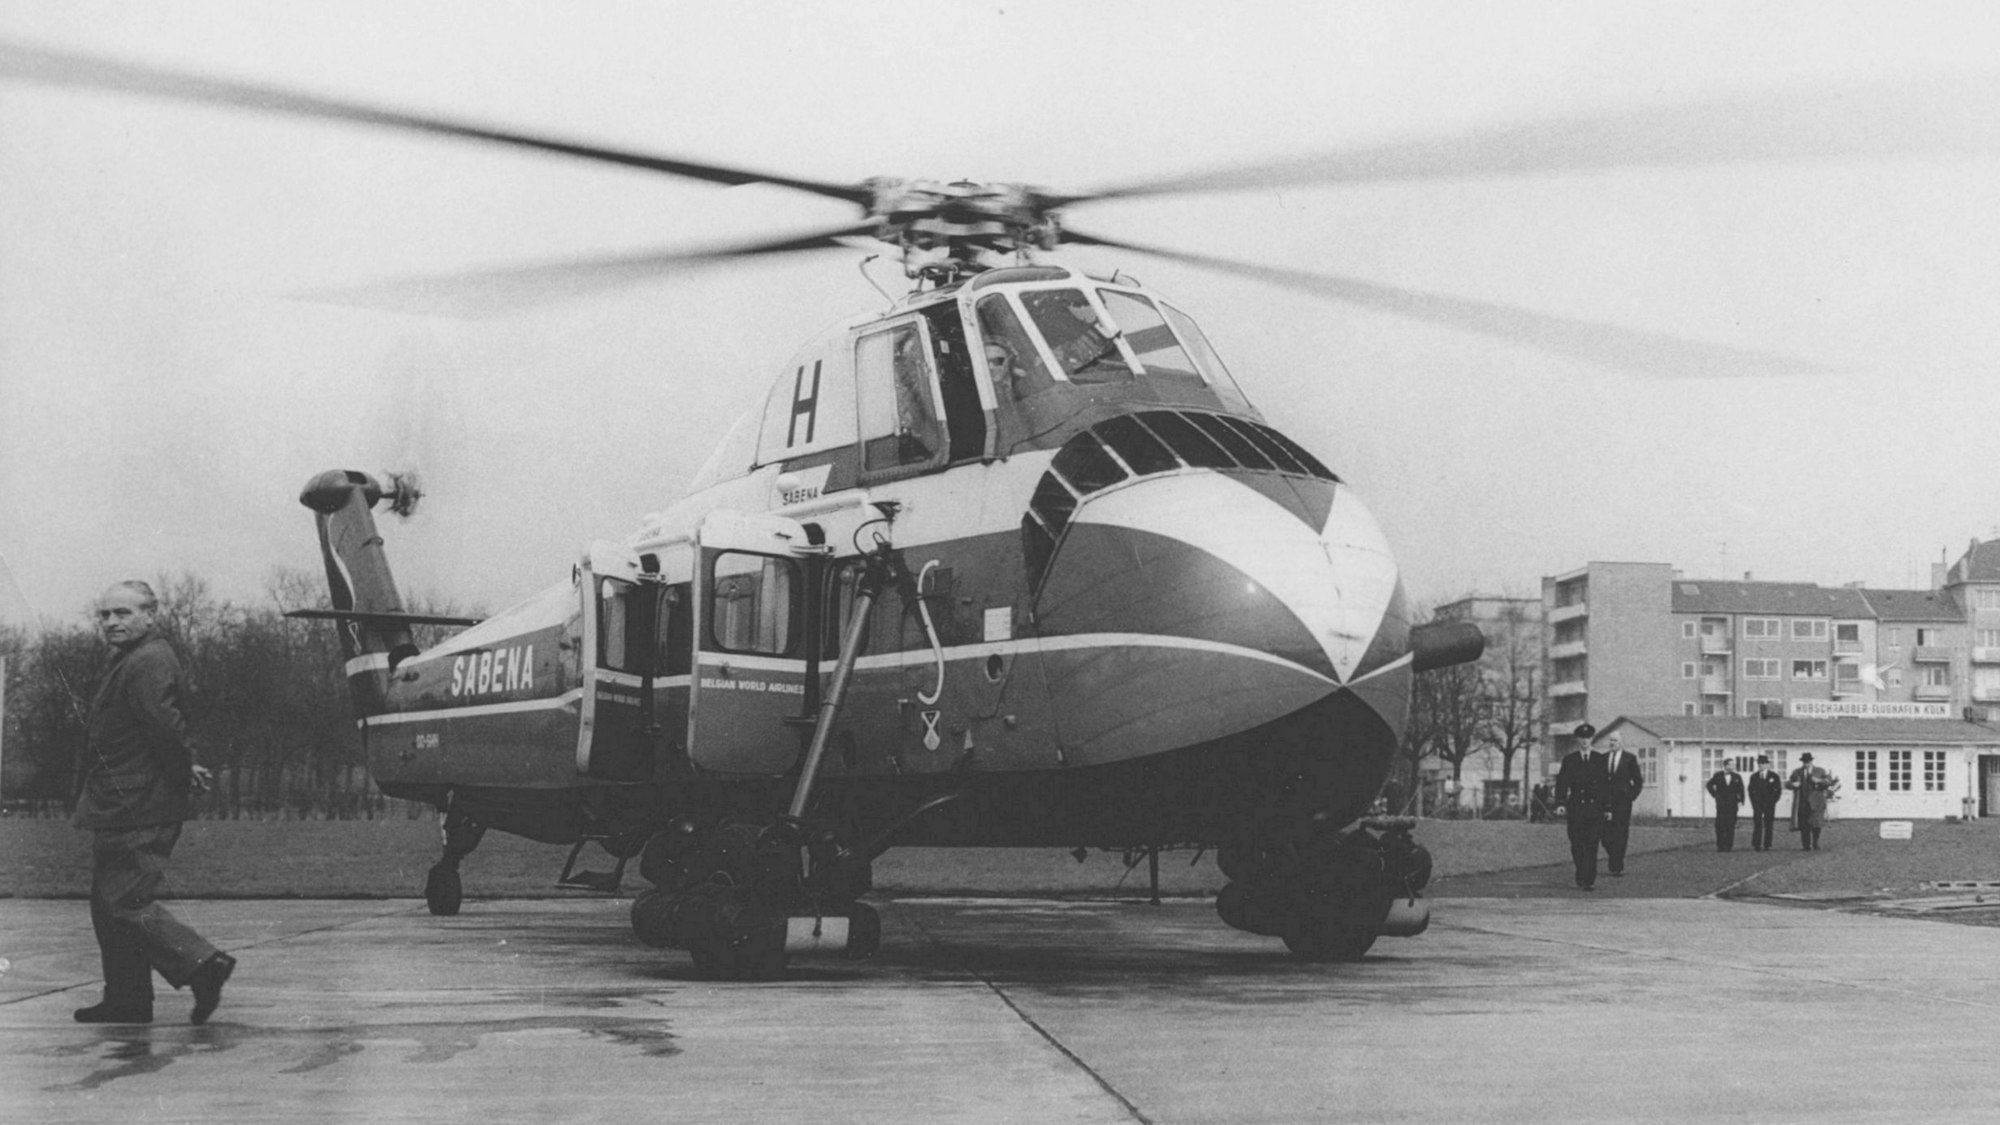 Hubschrauber auf einer Landebahn in einer schwarz-weiß-Aufnahme